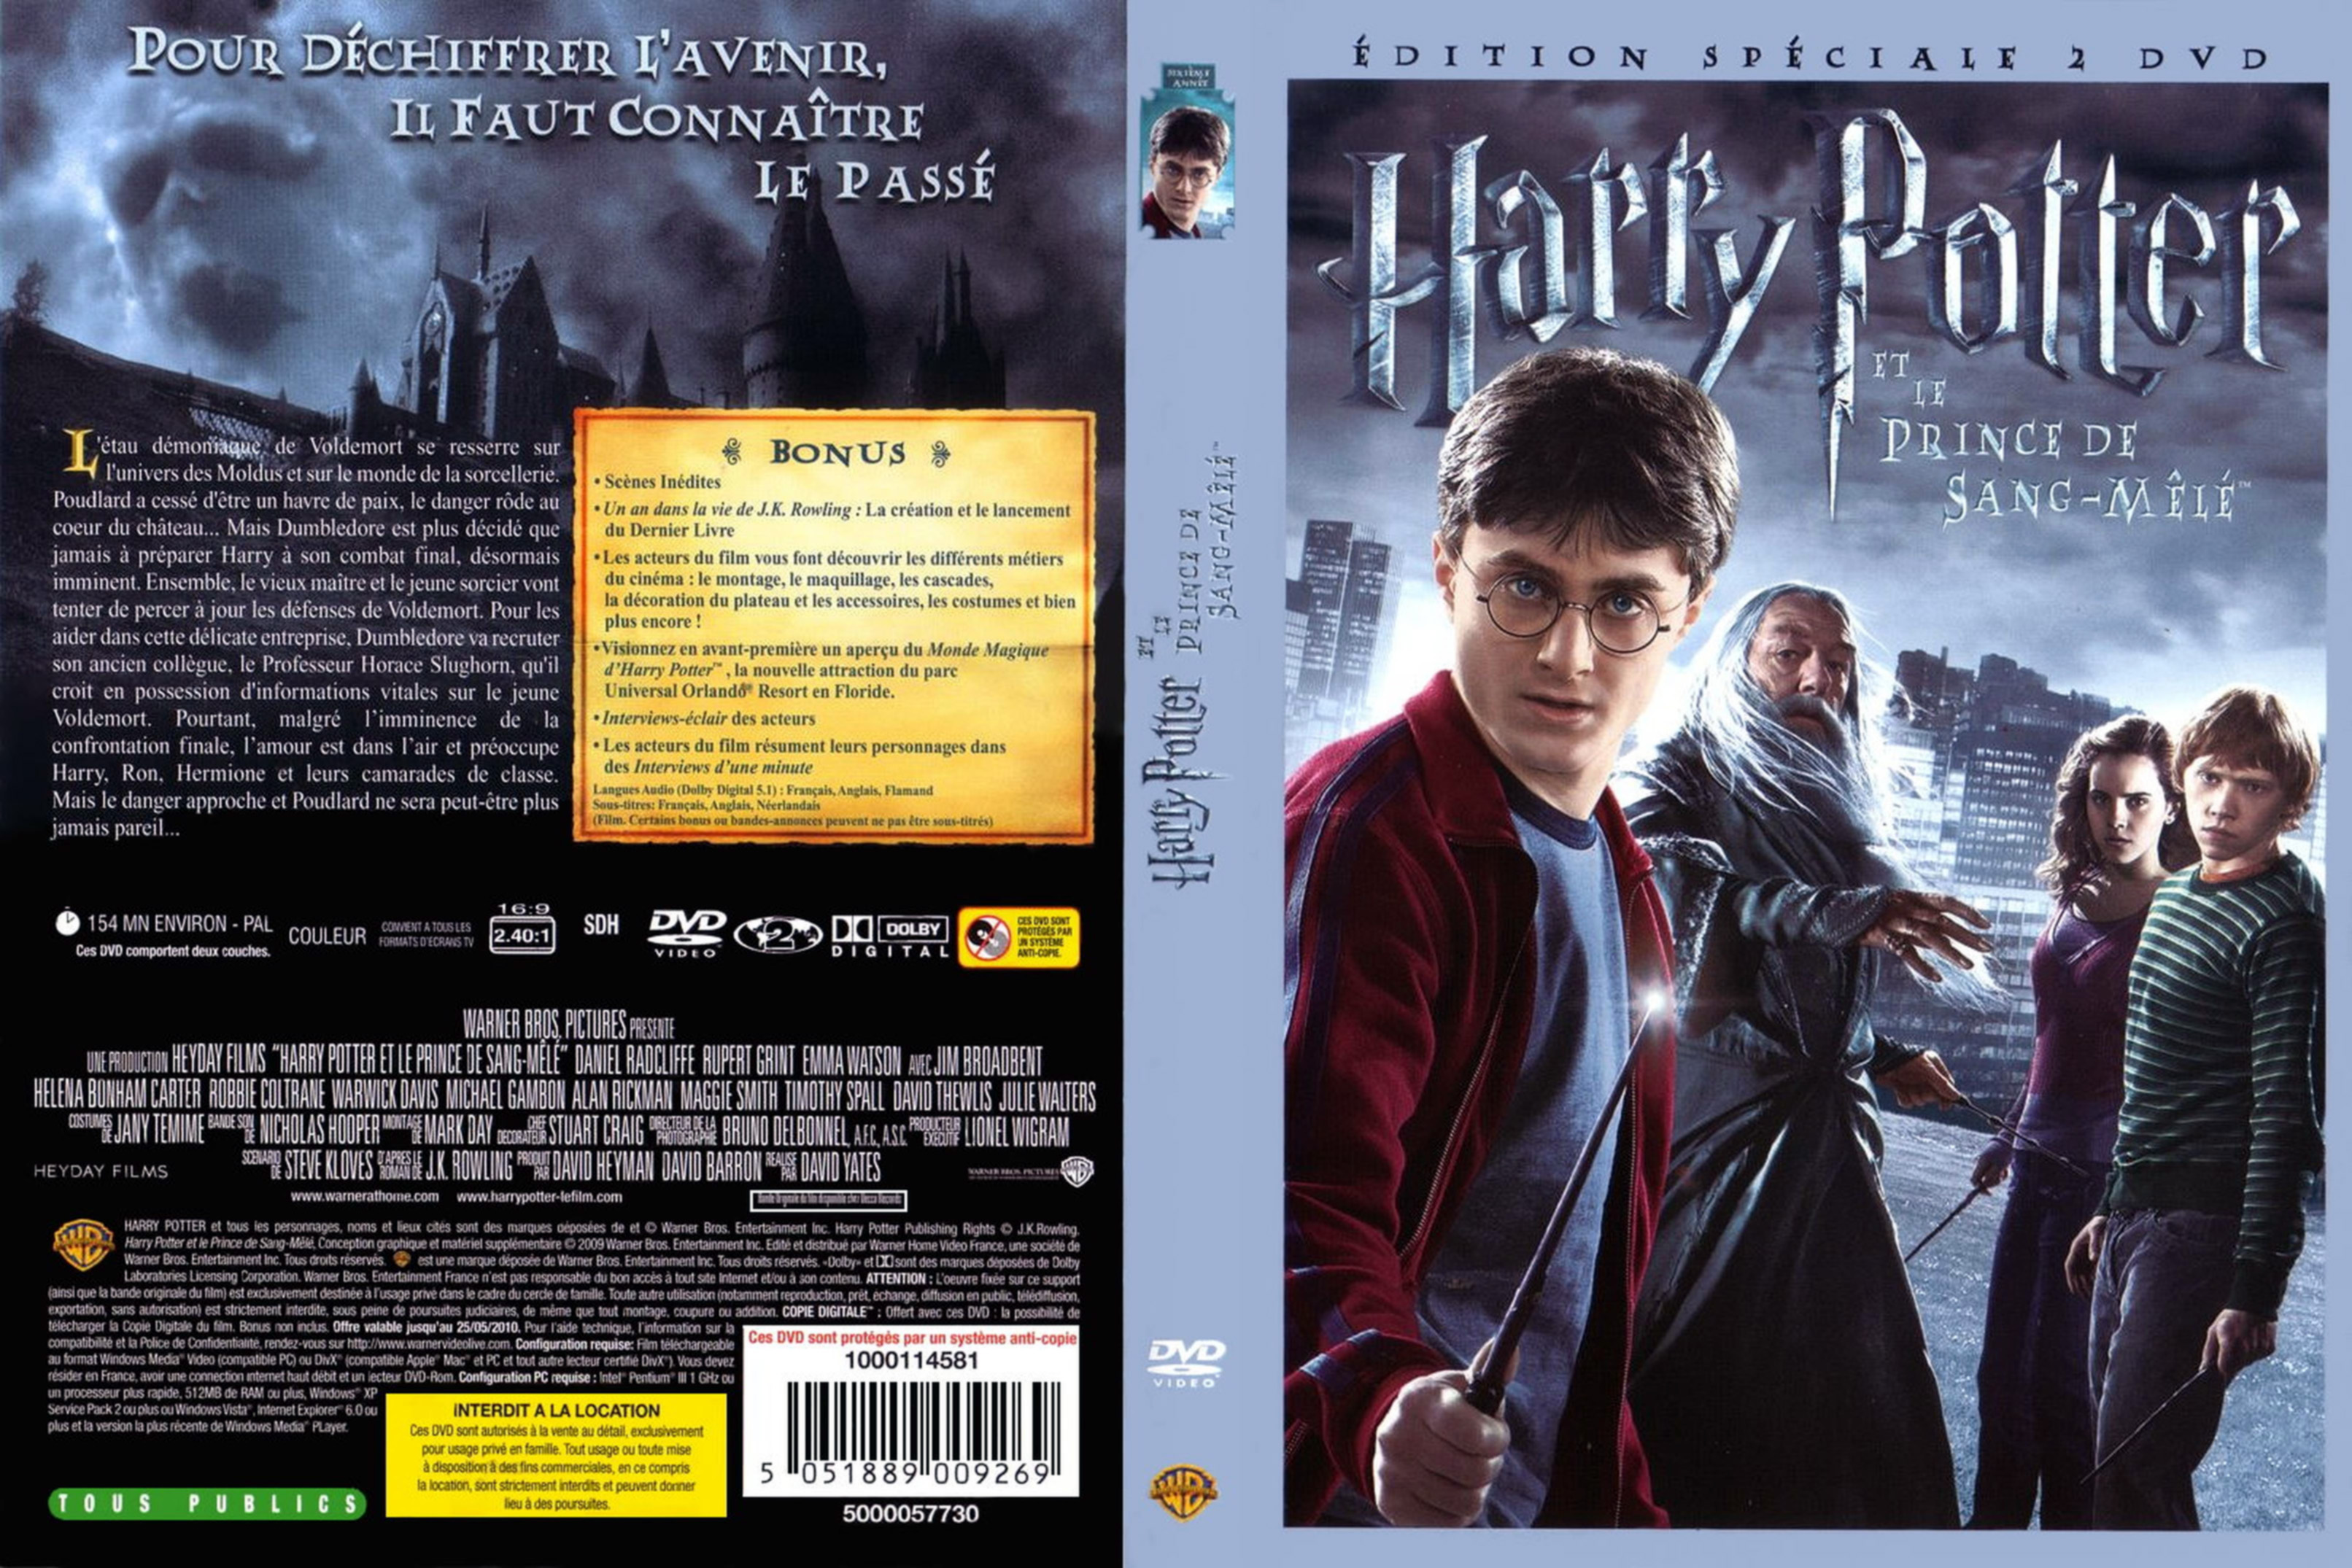 Jaquette DVD Harry Potter et le Prince de Sang-Ml